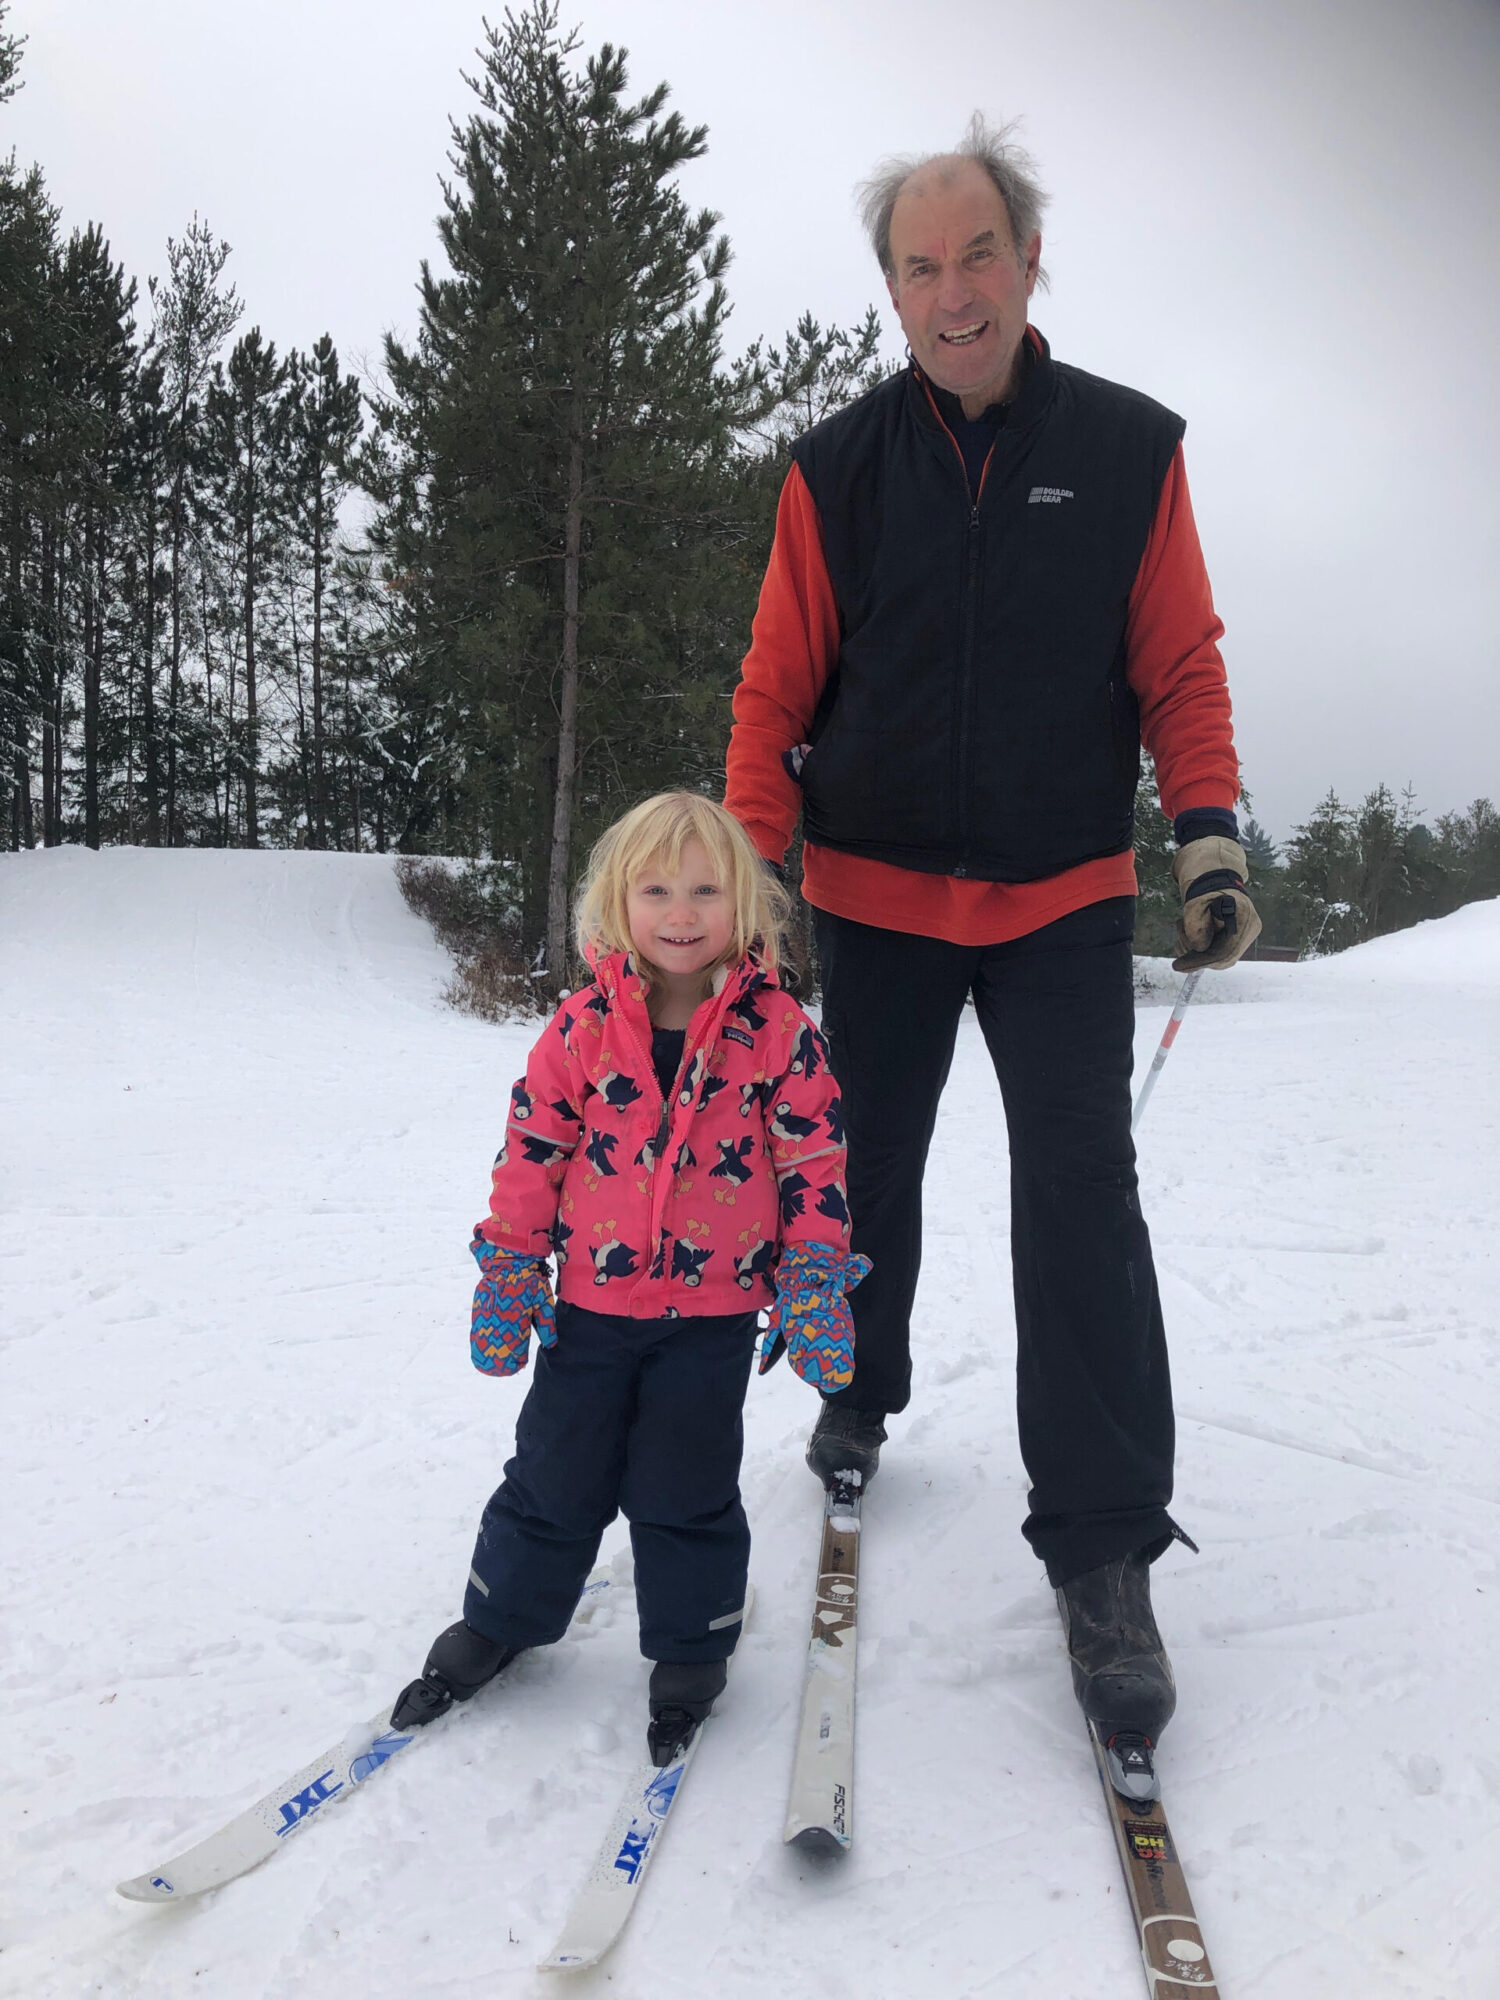 Bob and Sayla skiing